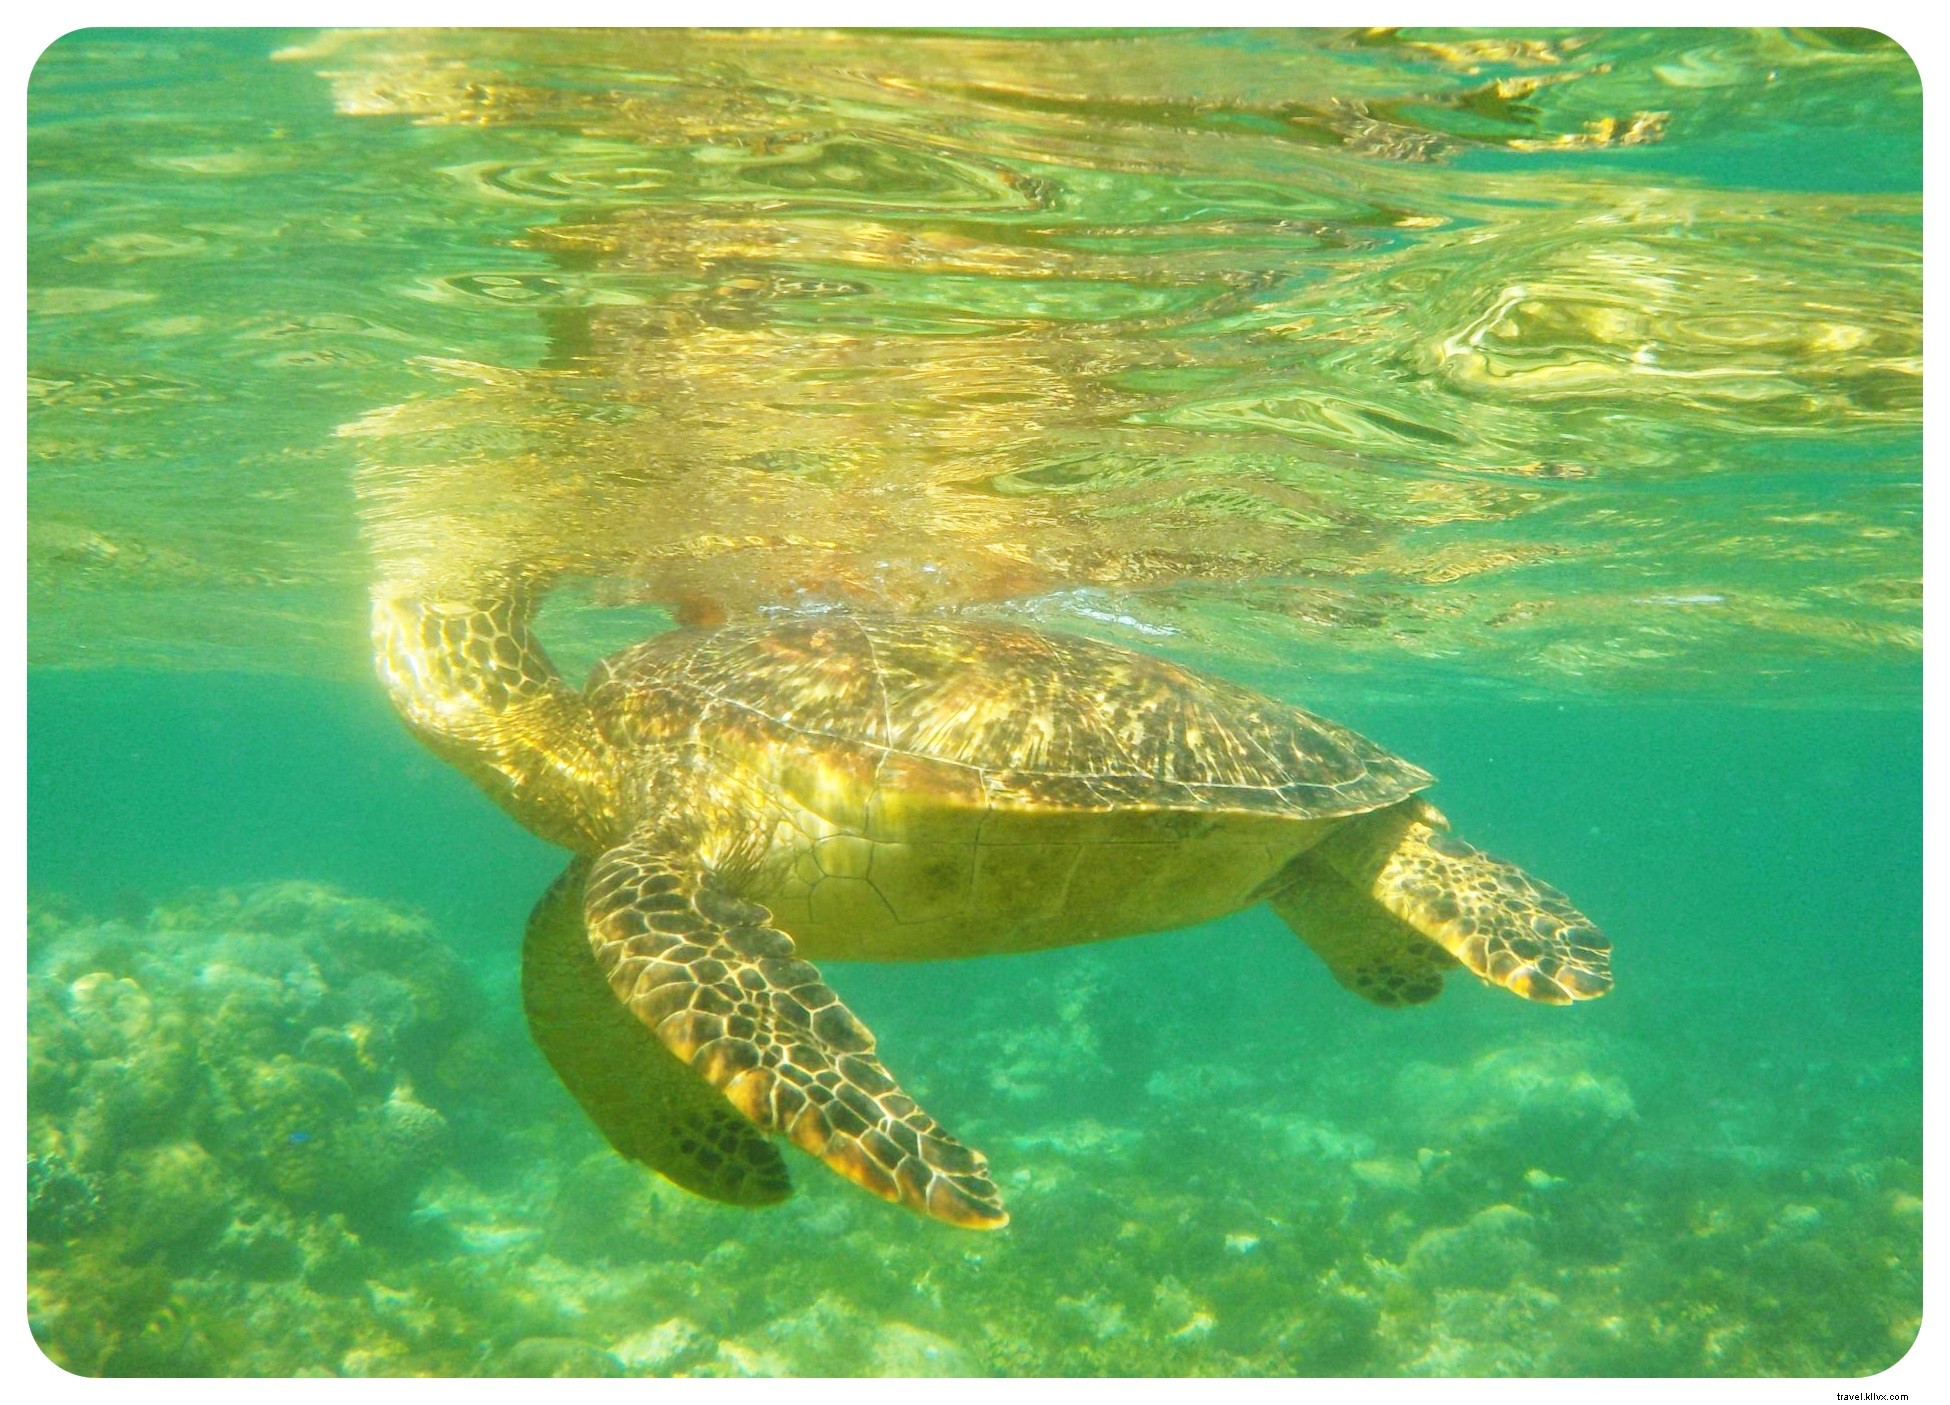 Nuotare con le tartarughe marine nell isola di Apo